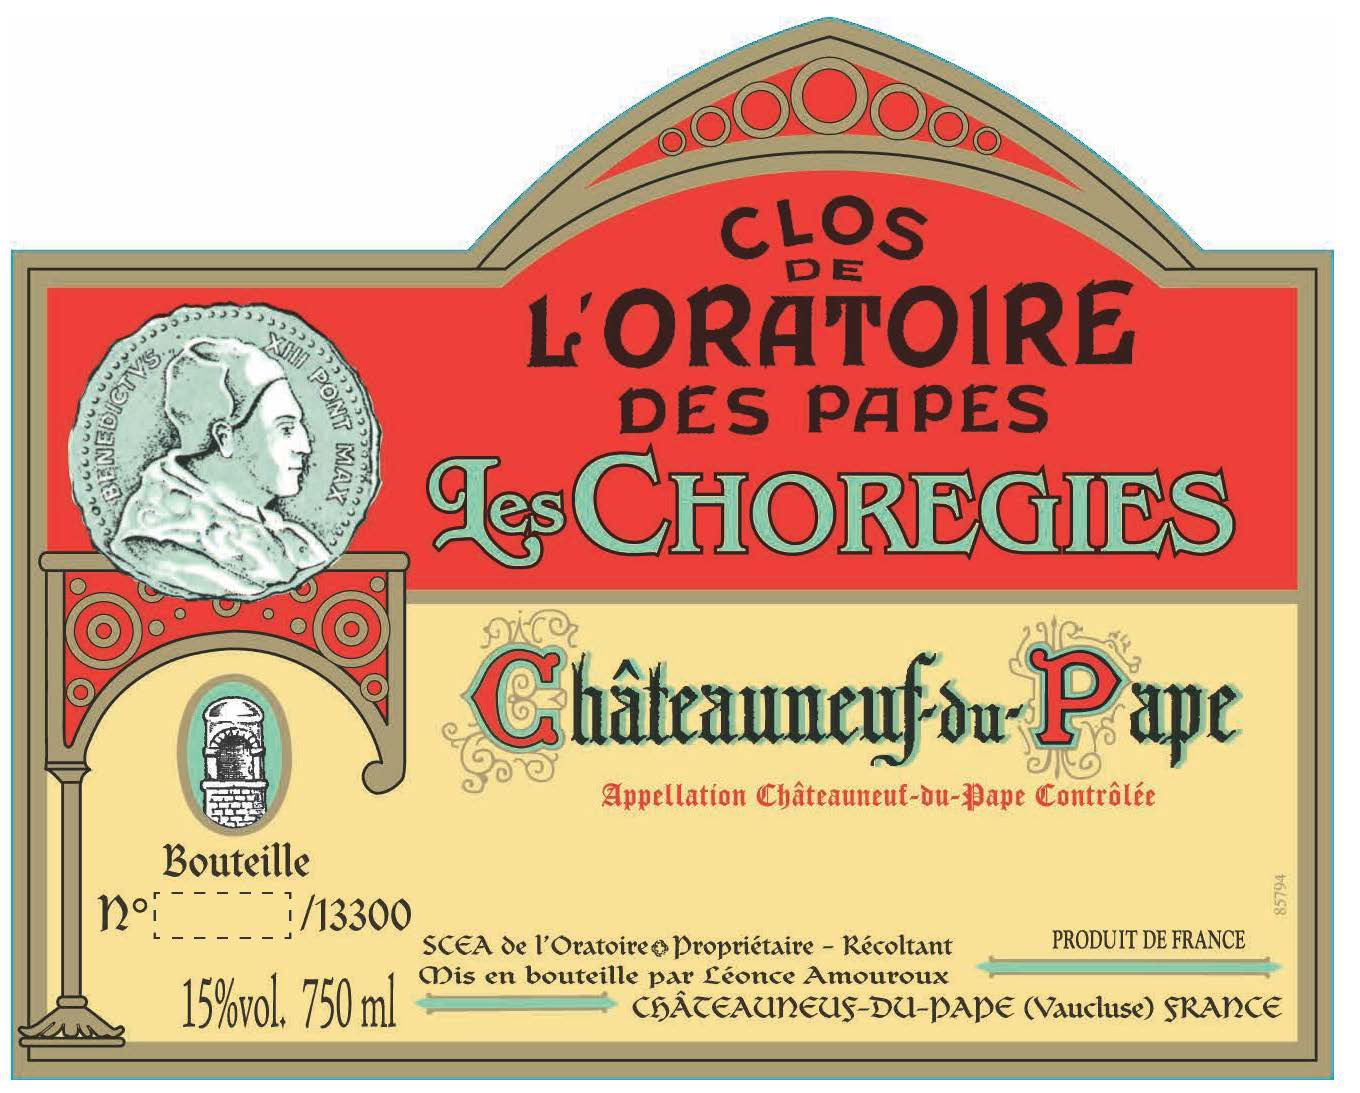 Clos de L'Oratoire des Papes - Les Choregies label